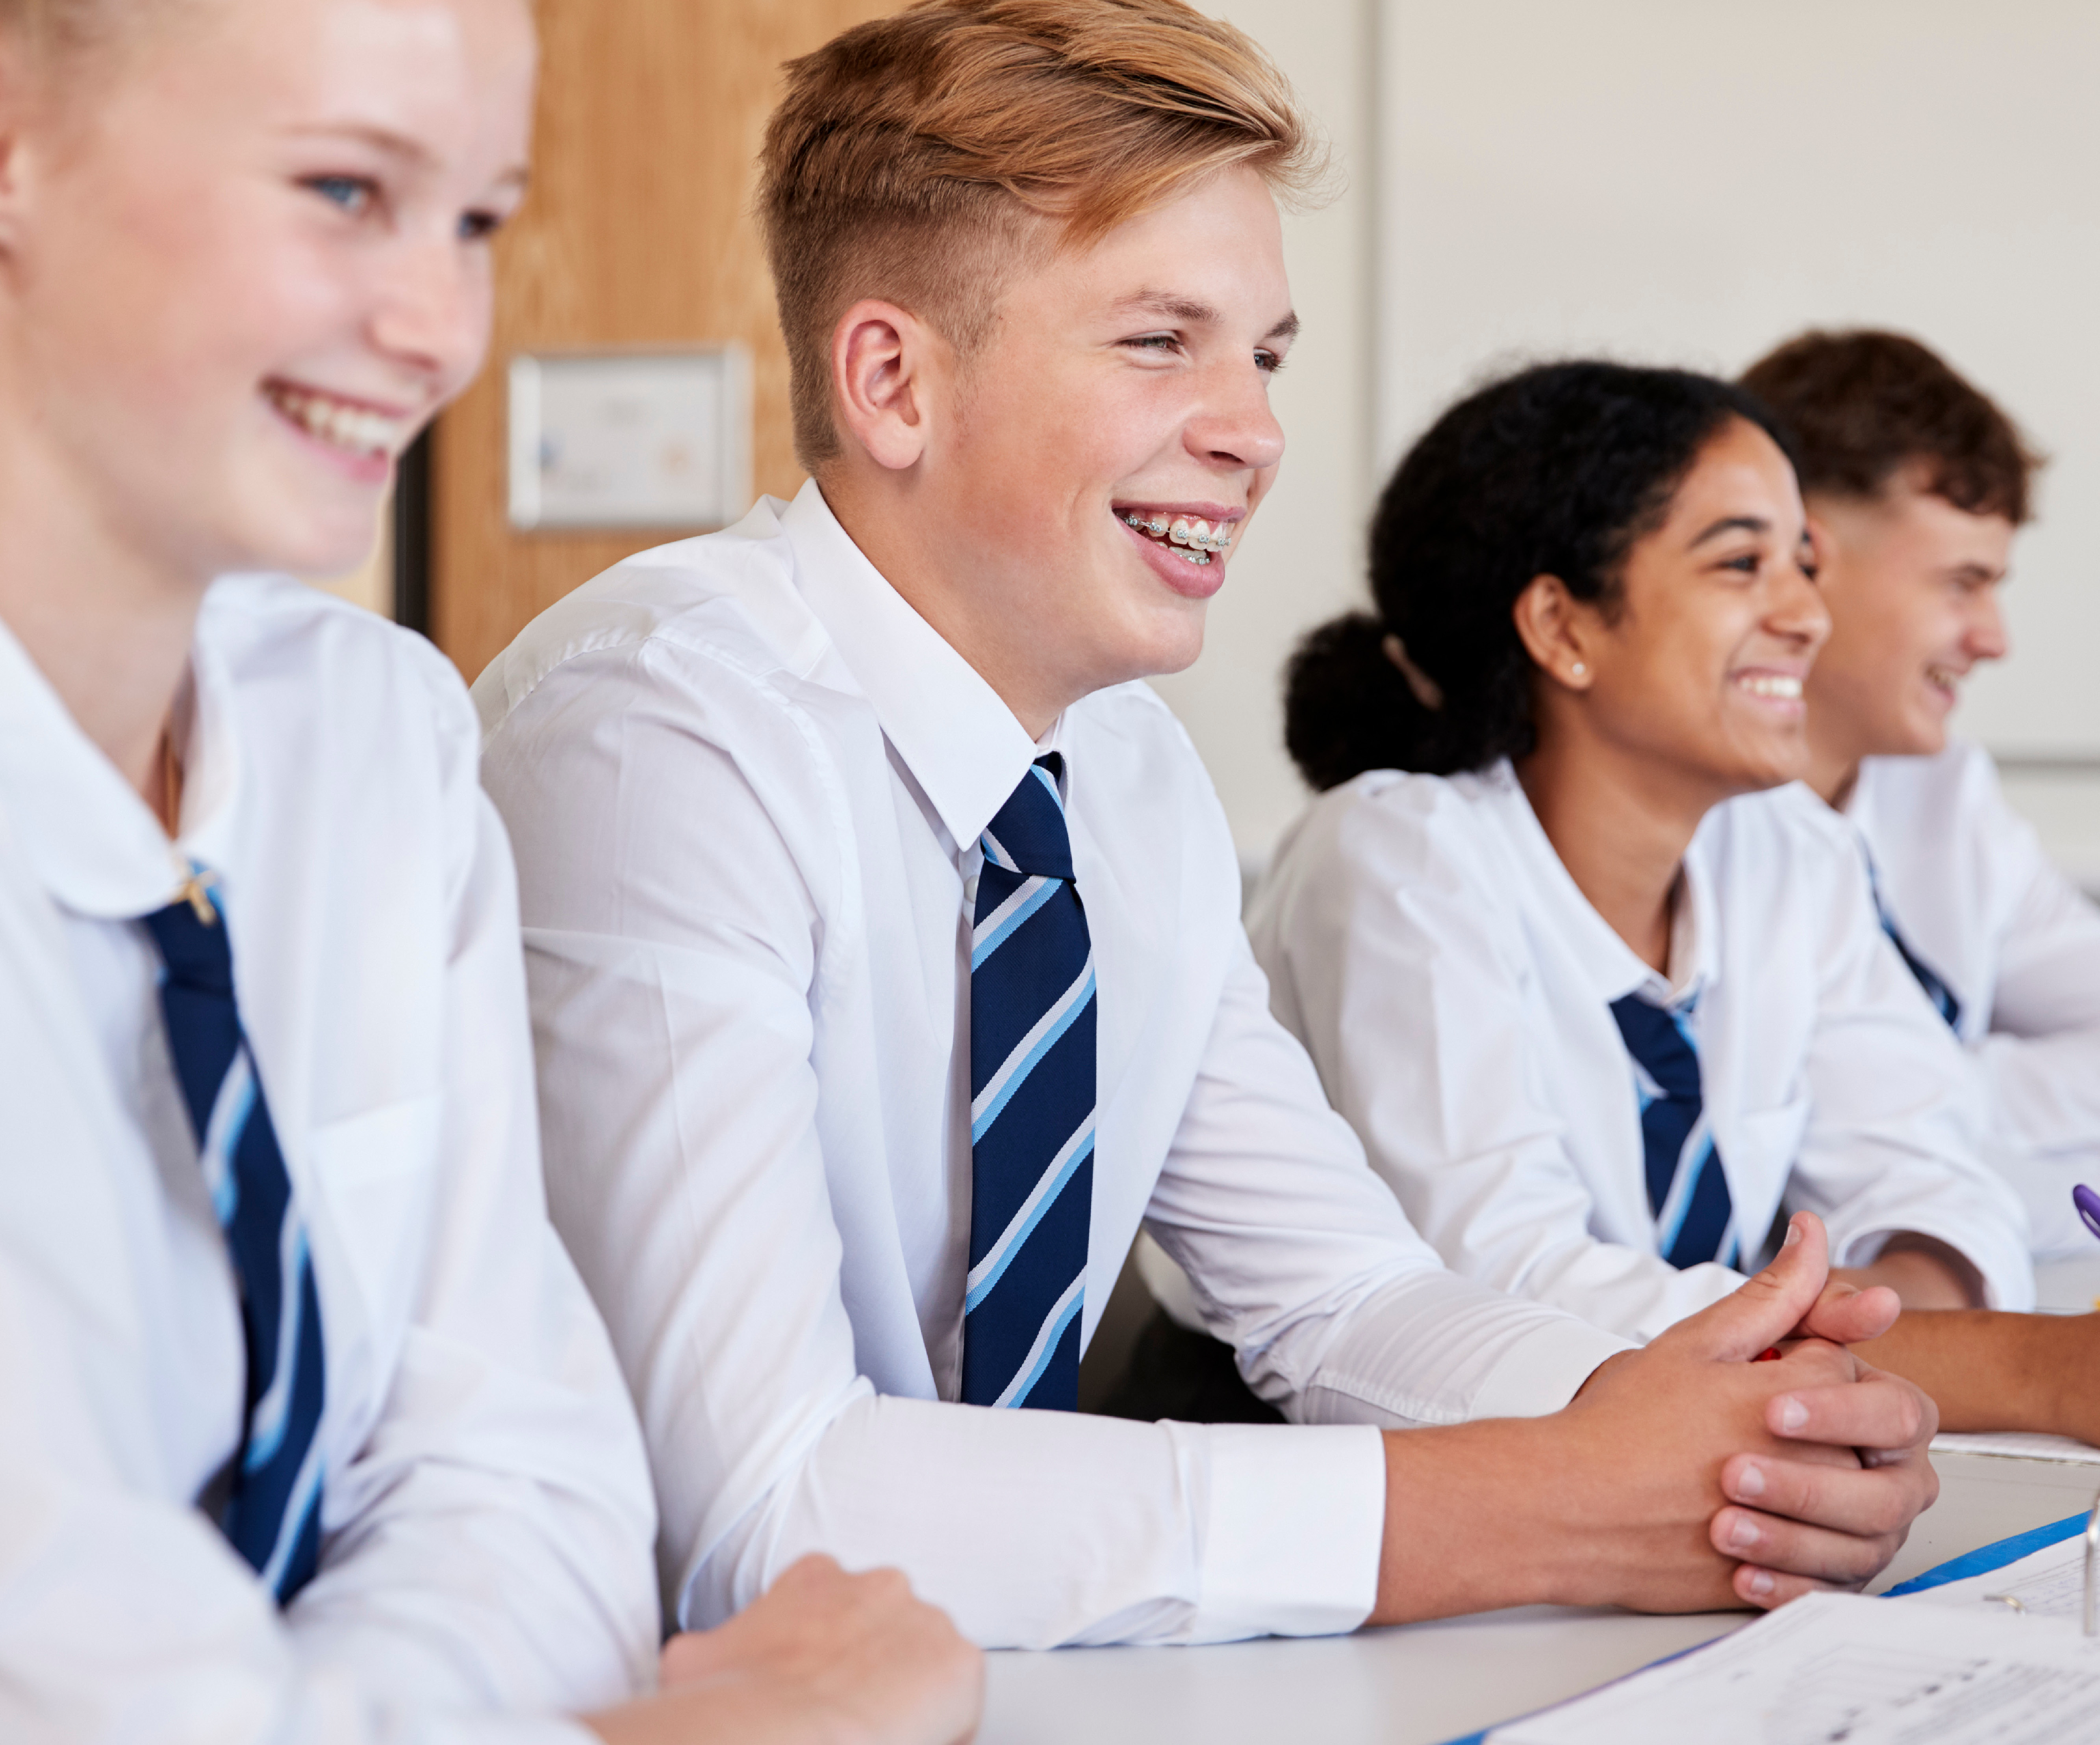 teens school uniform smiling in classroom